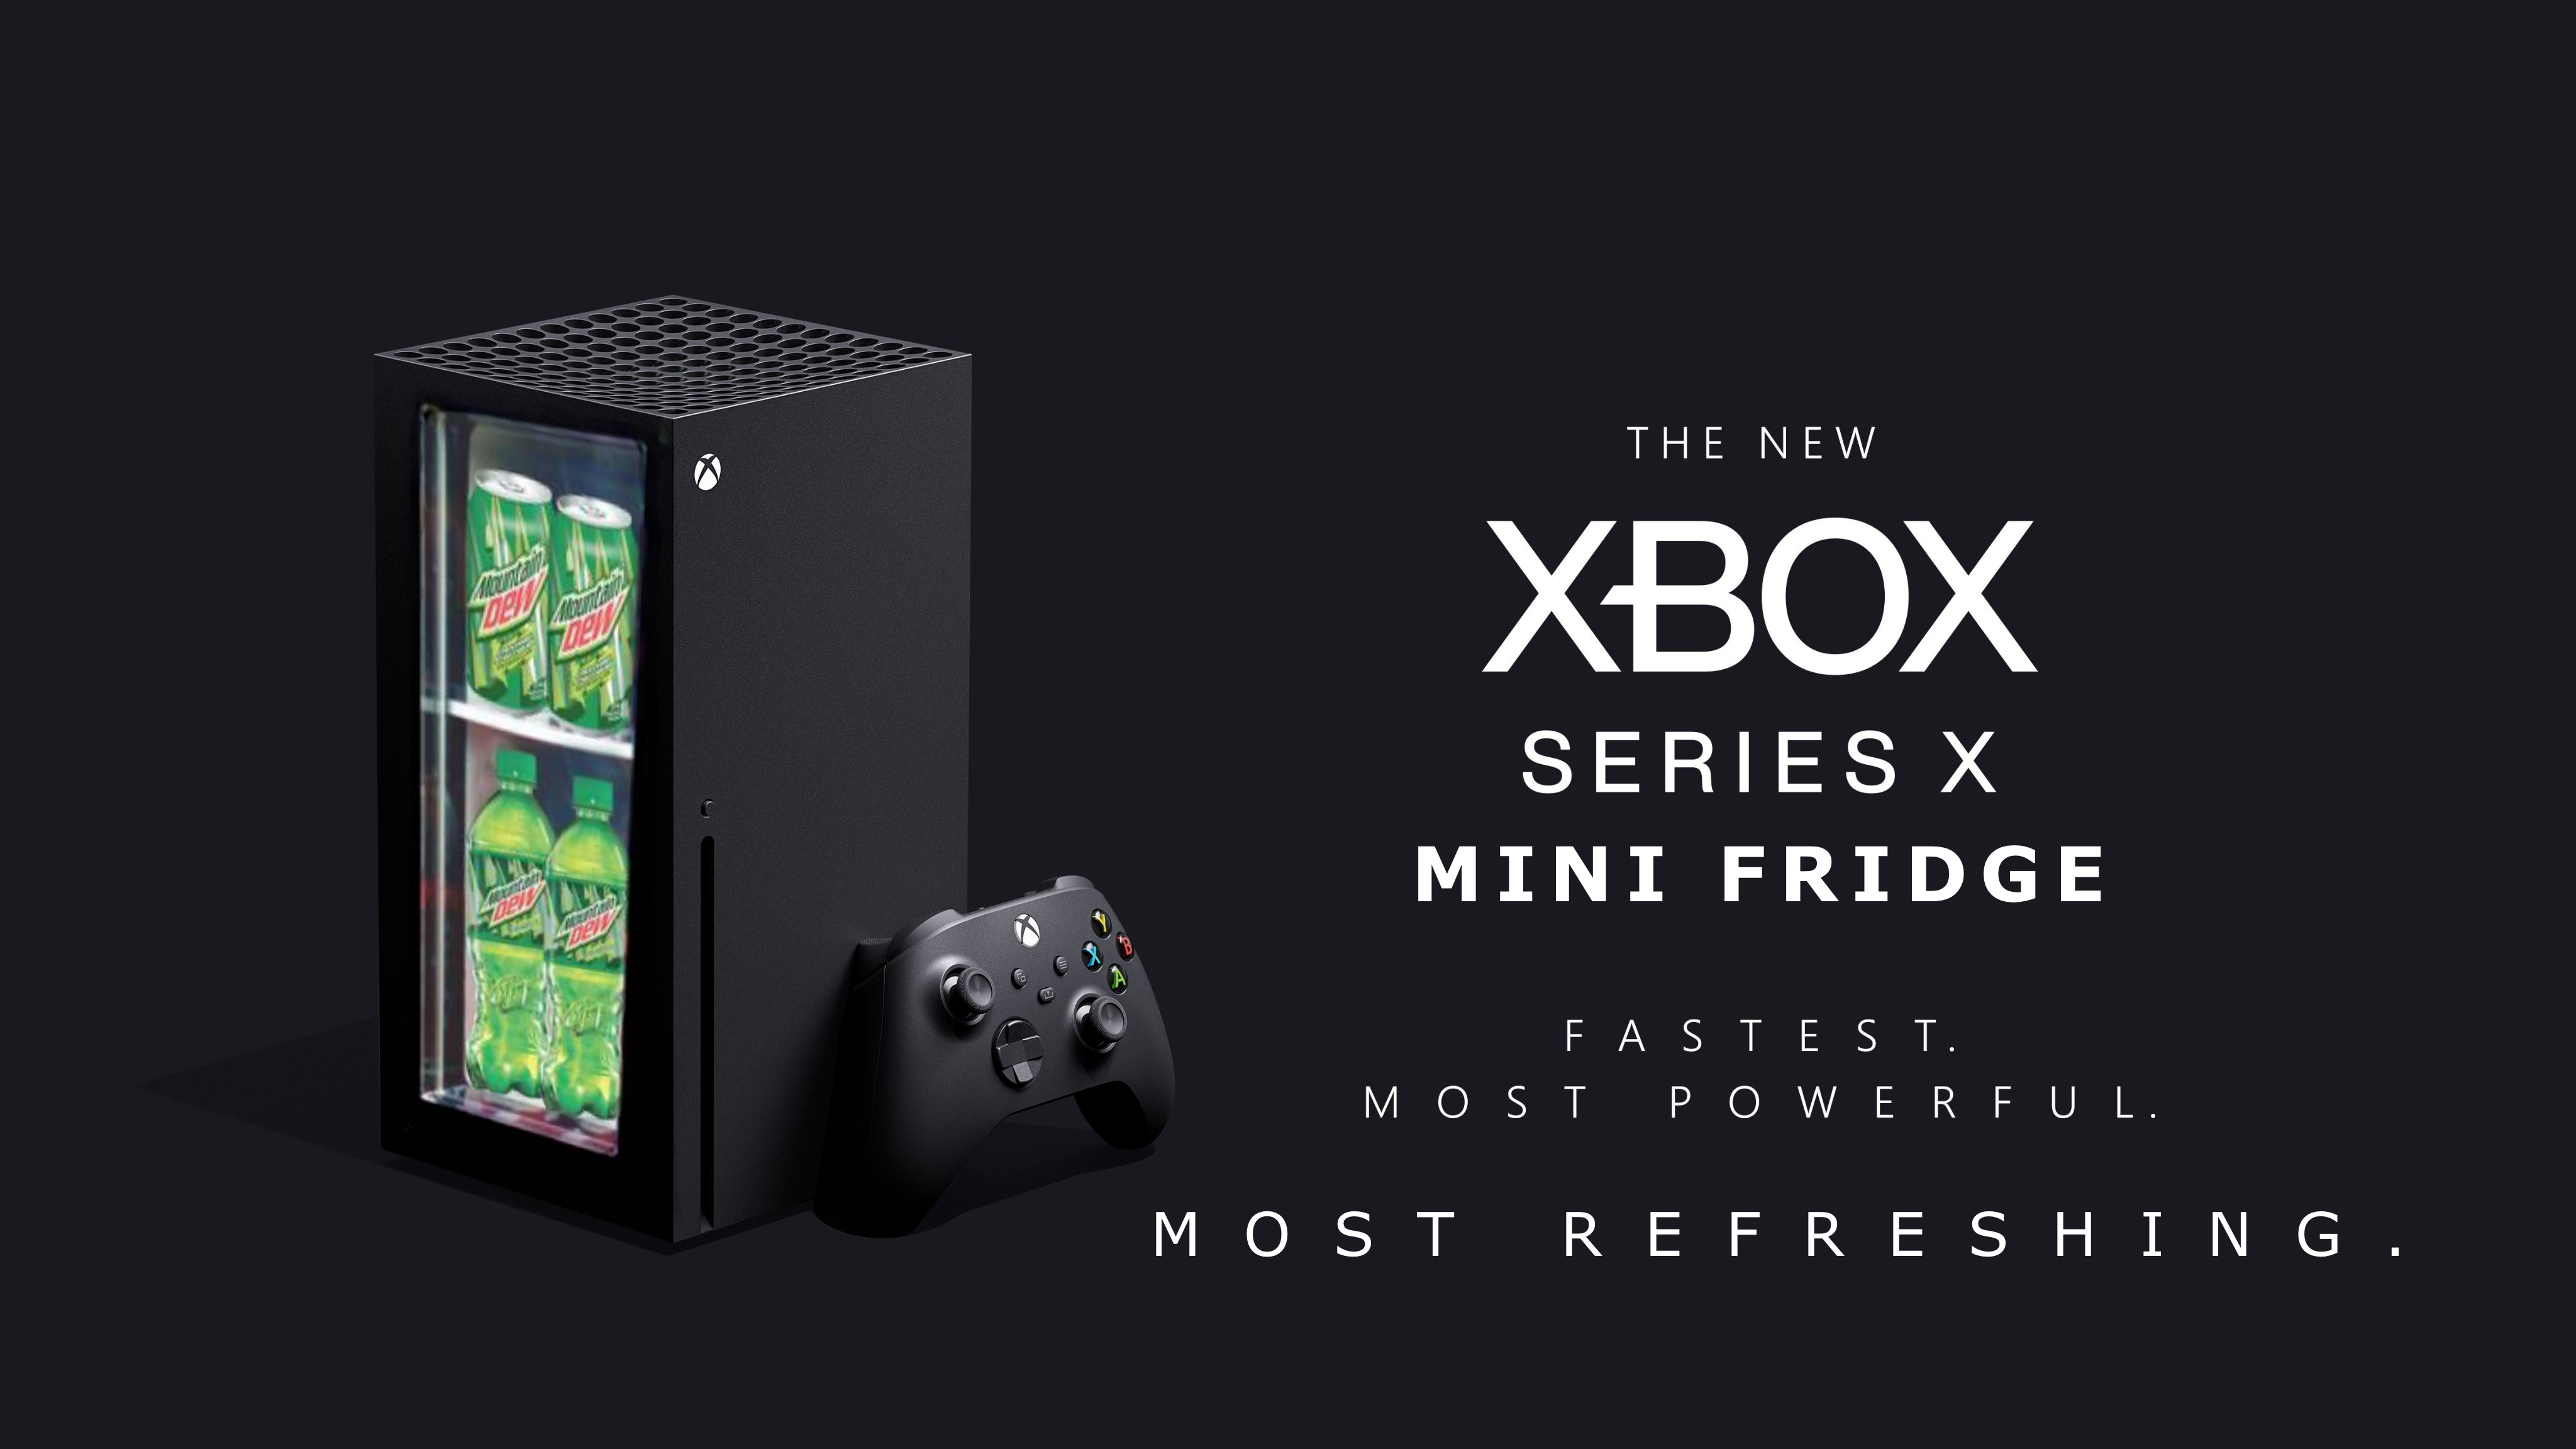 Xbox series x холодильник. Мини холодильник Xbox Mini Fridge. Мини холодильник Xbox Series x. Хbоx Sеriеs Mini-Fridge. Мини-холодильник Xbox Series x Mini Fridge.